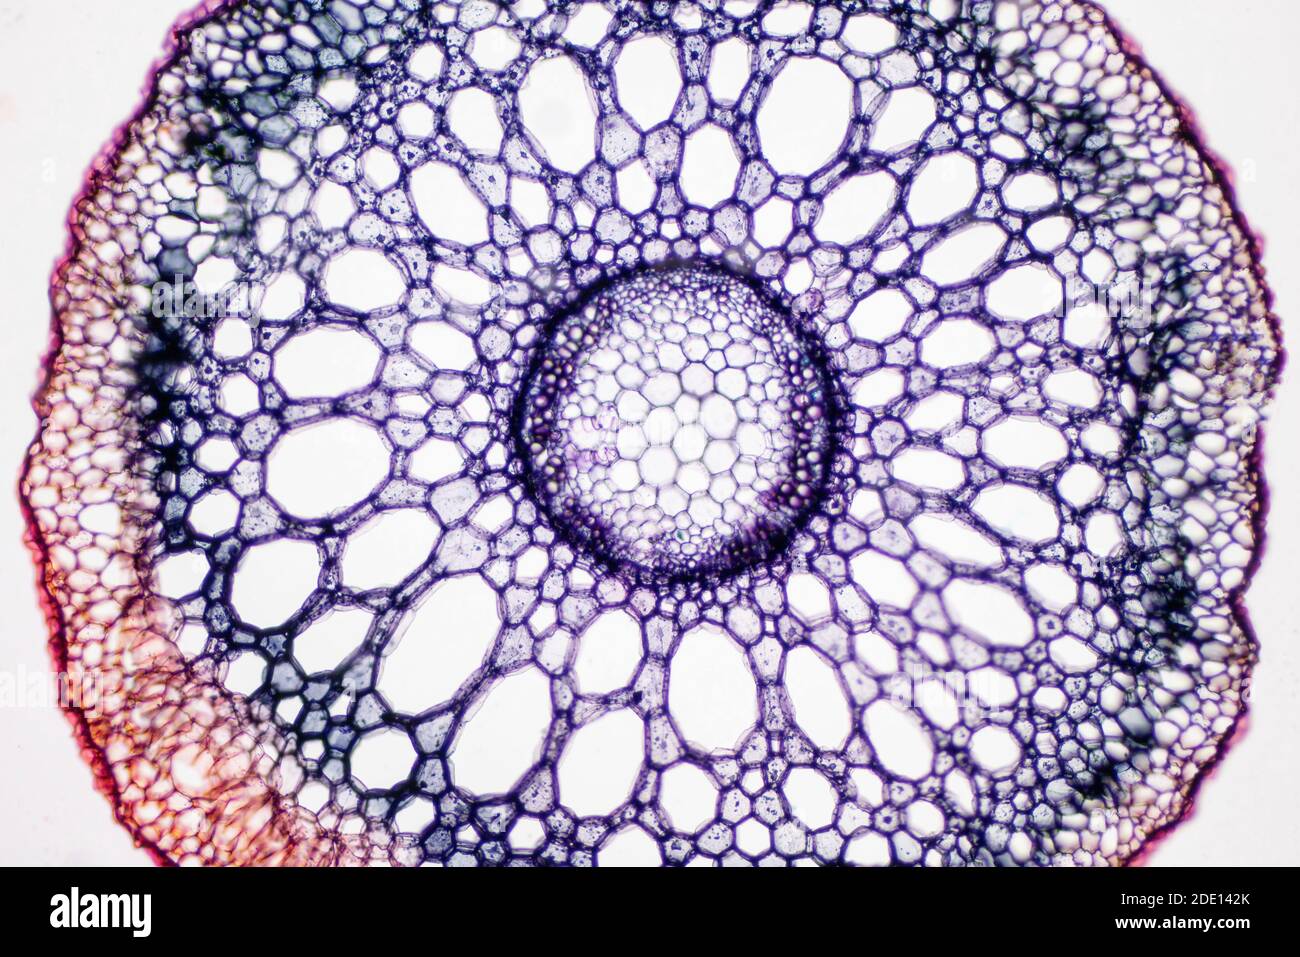 Radice di pianta, micrografia leggera Foto Stock